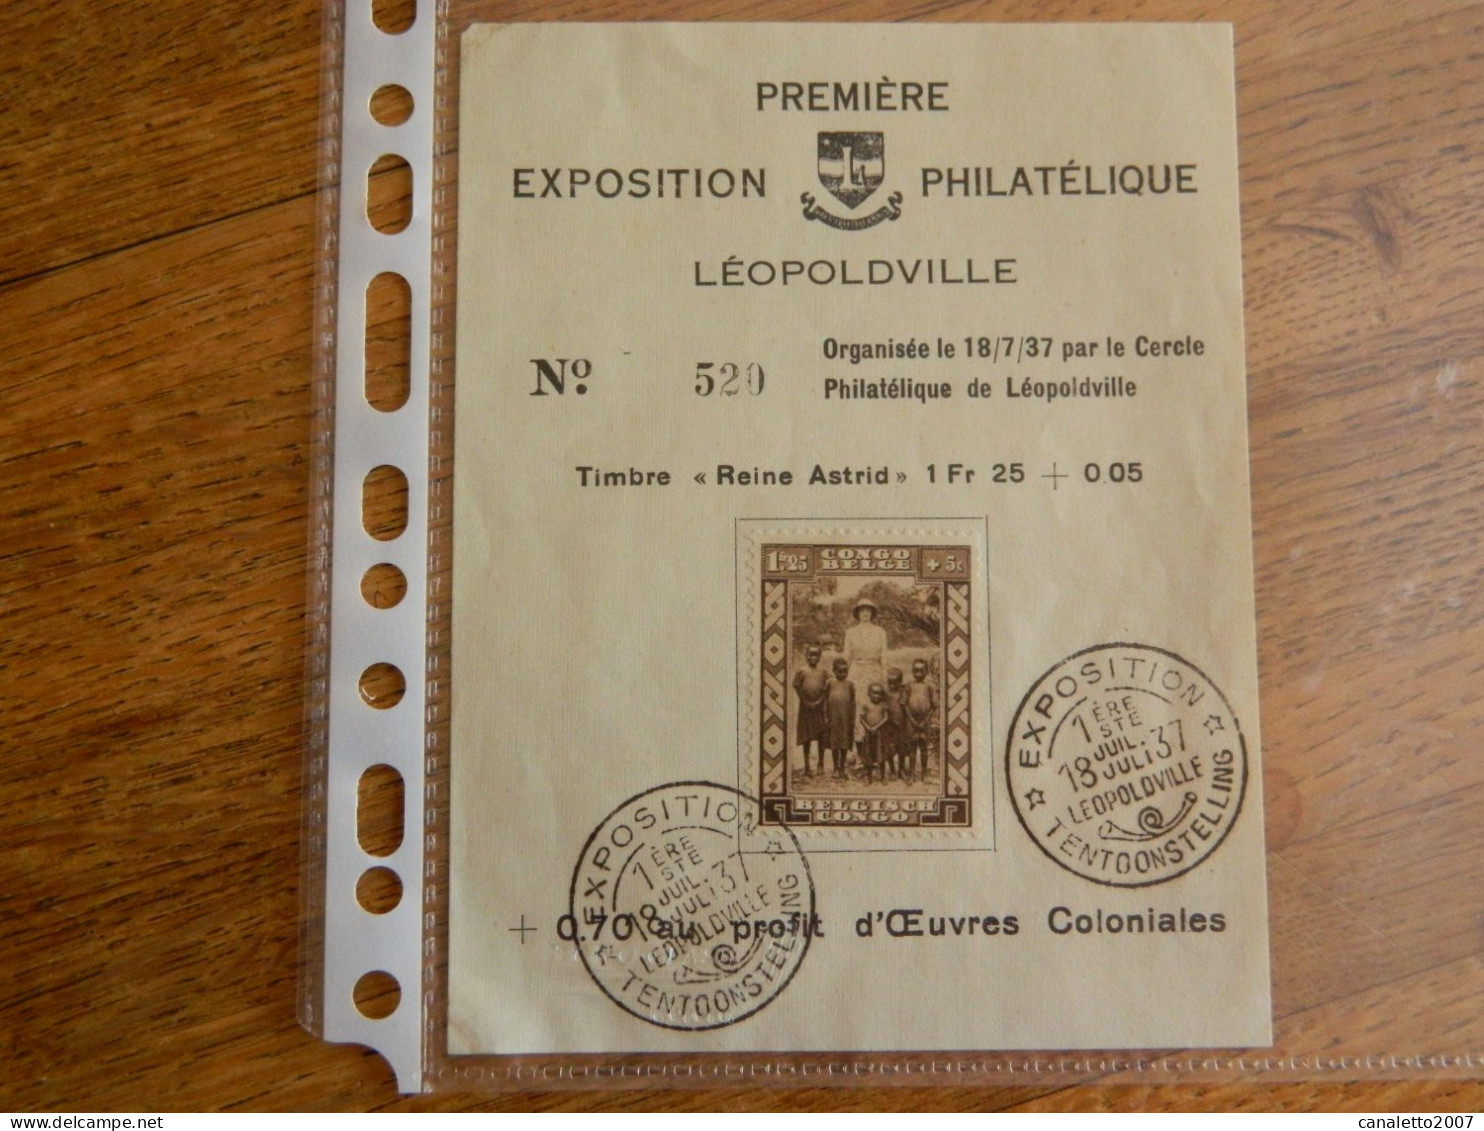 CONGO BELGE-LEOPOLDVILLE: PETIT FEUILLET DE LA 1ERE EXPOSITION PHILATELIQUE EN 1937 AVEC LE TIMBRE N° 194 + OBLITERATION - Briefe U. Dokumente